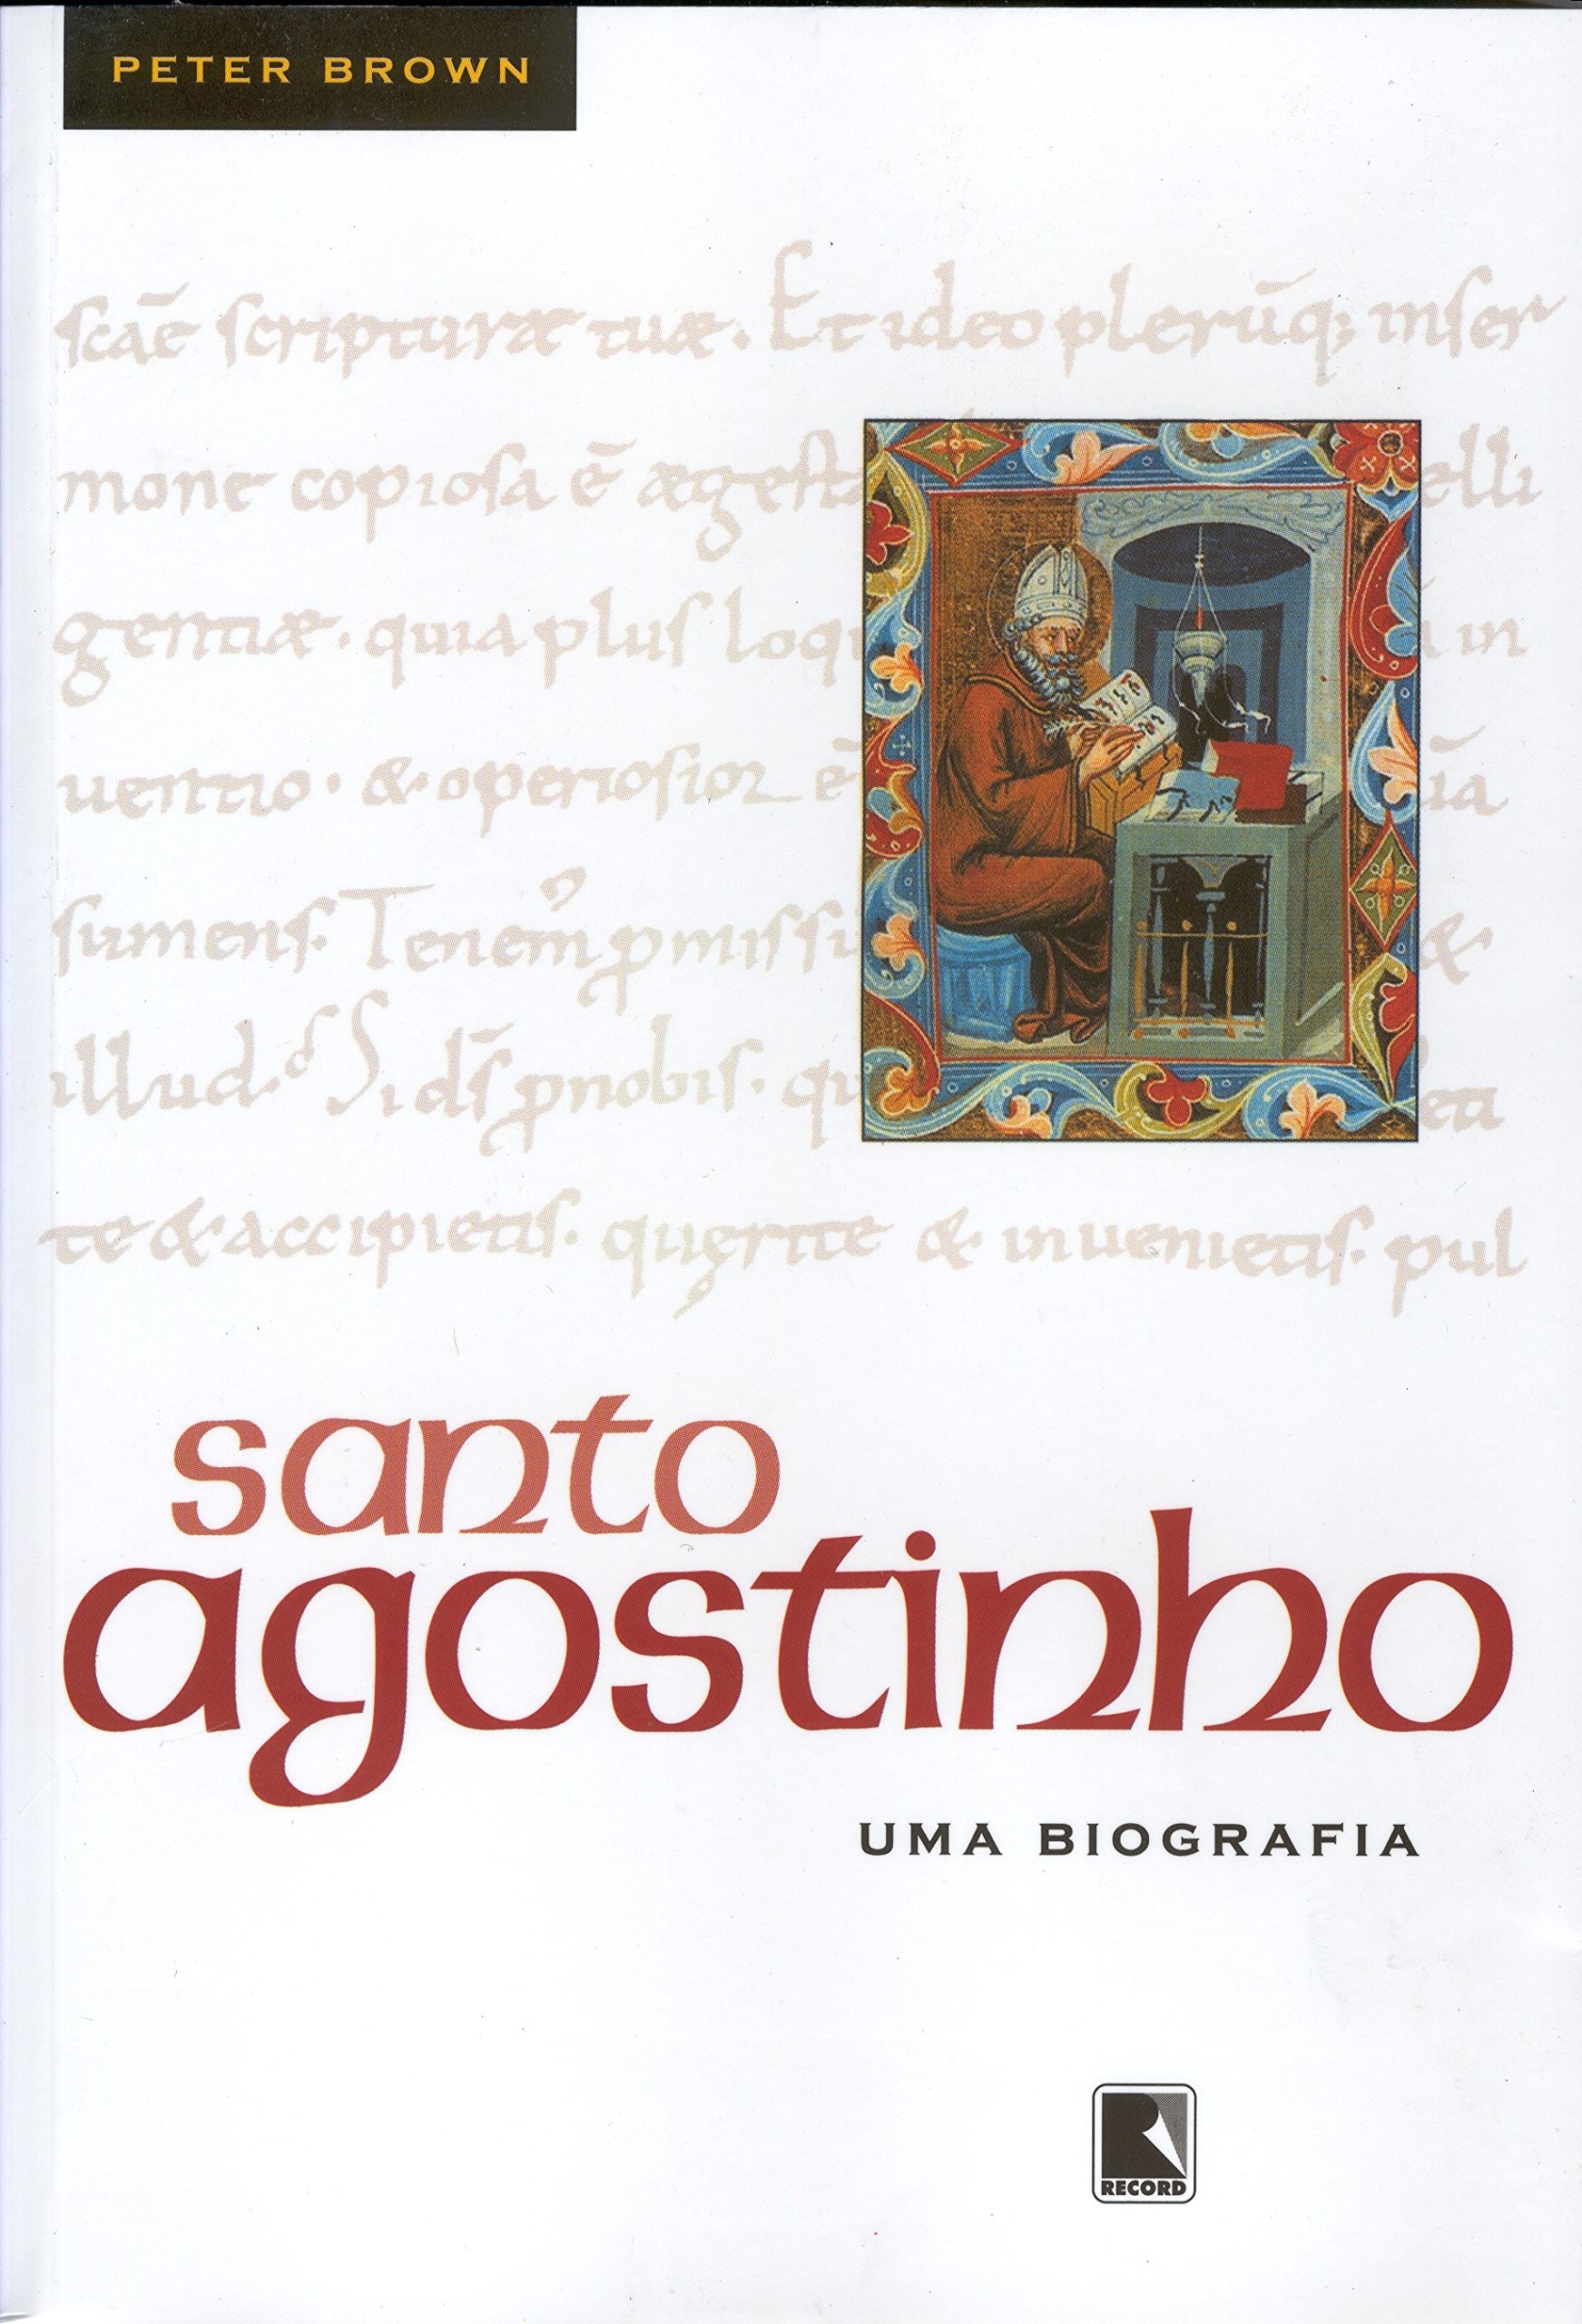 Santo Agostinho - Uma Biografia